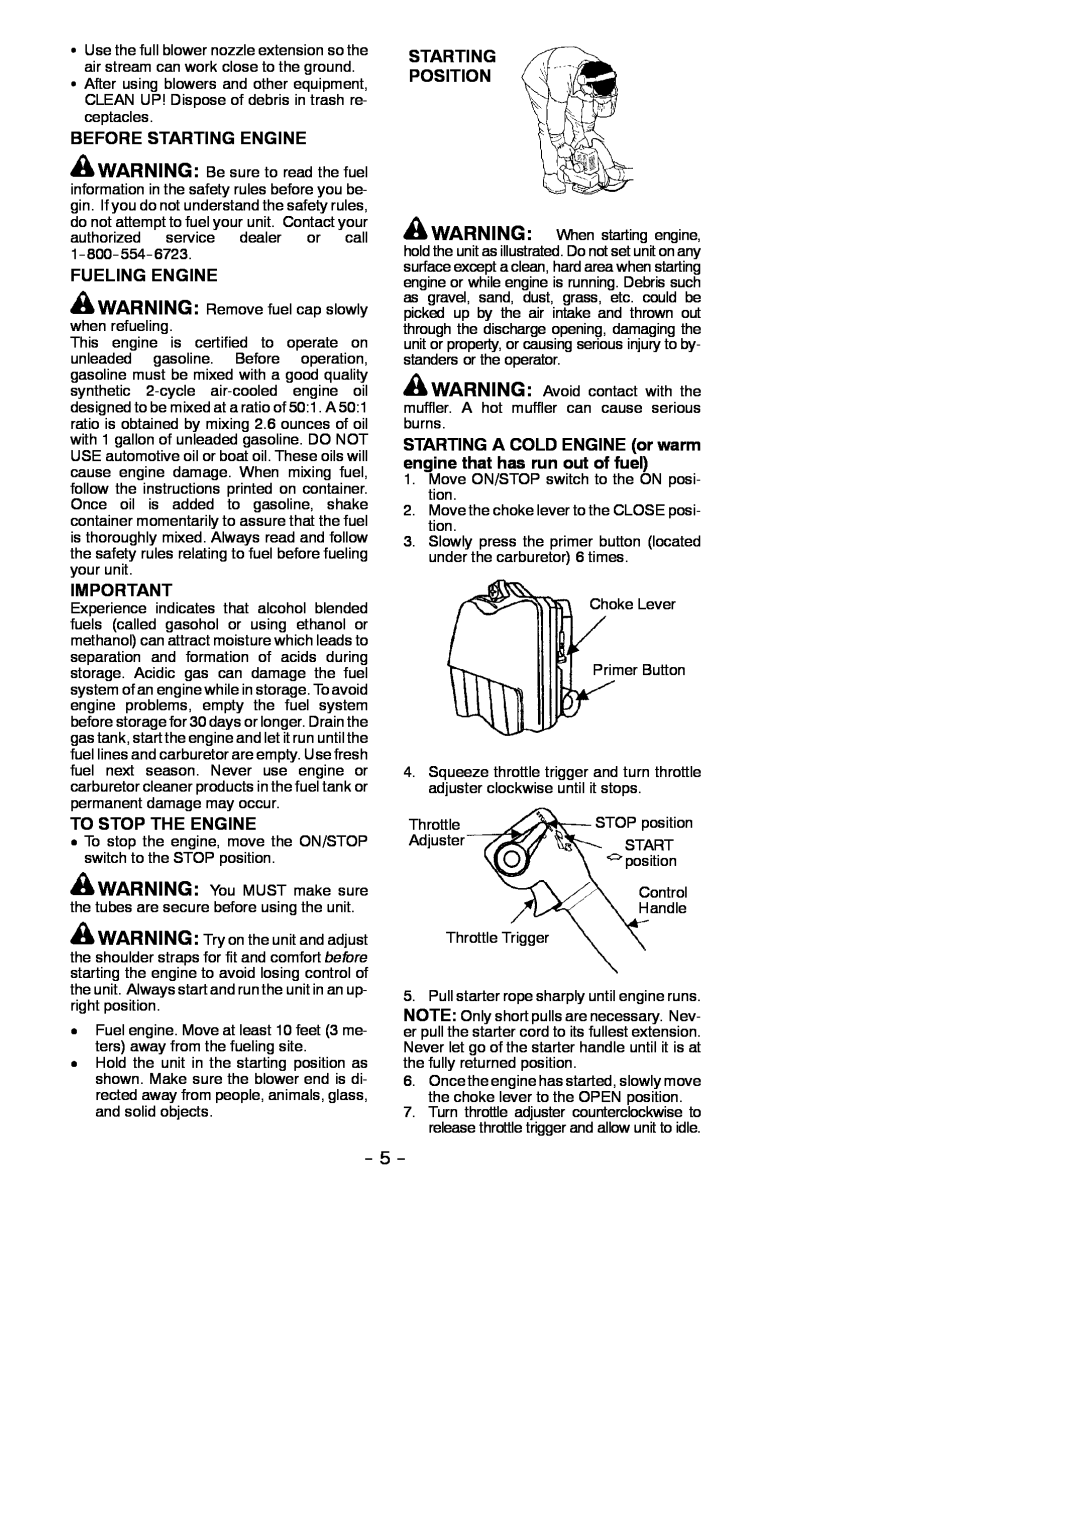 Poulan BP406 instruction manual Before Starting Engine, Fueling Engine, To Stop The Engine, Starting Position 